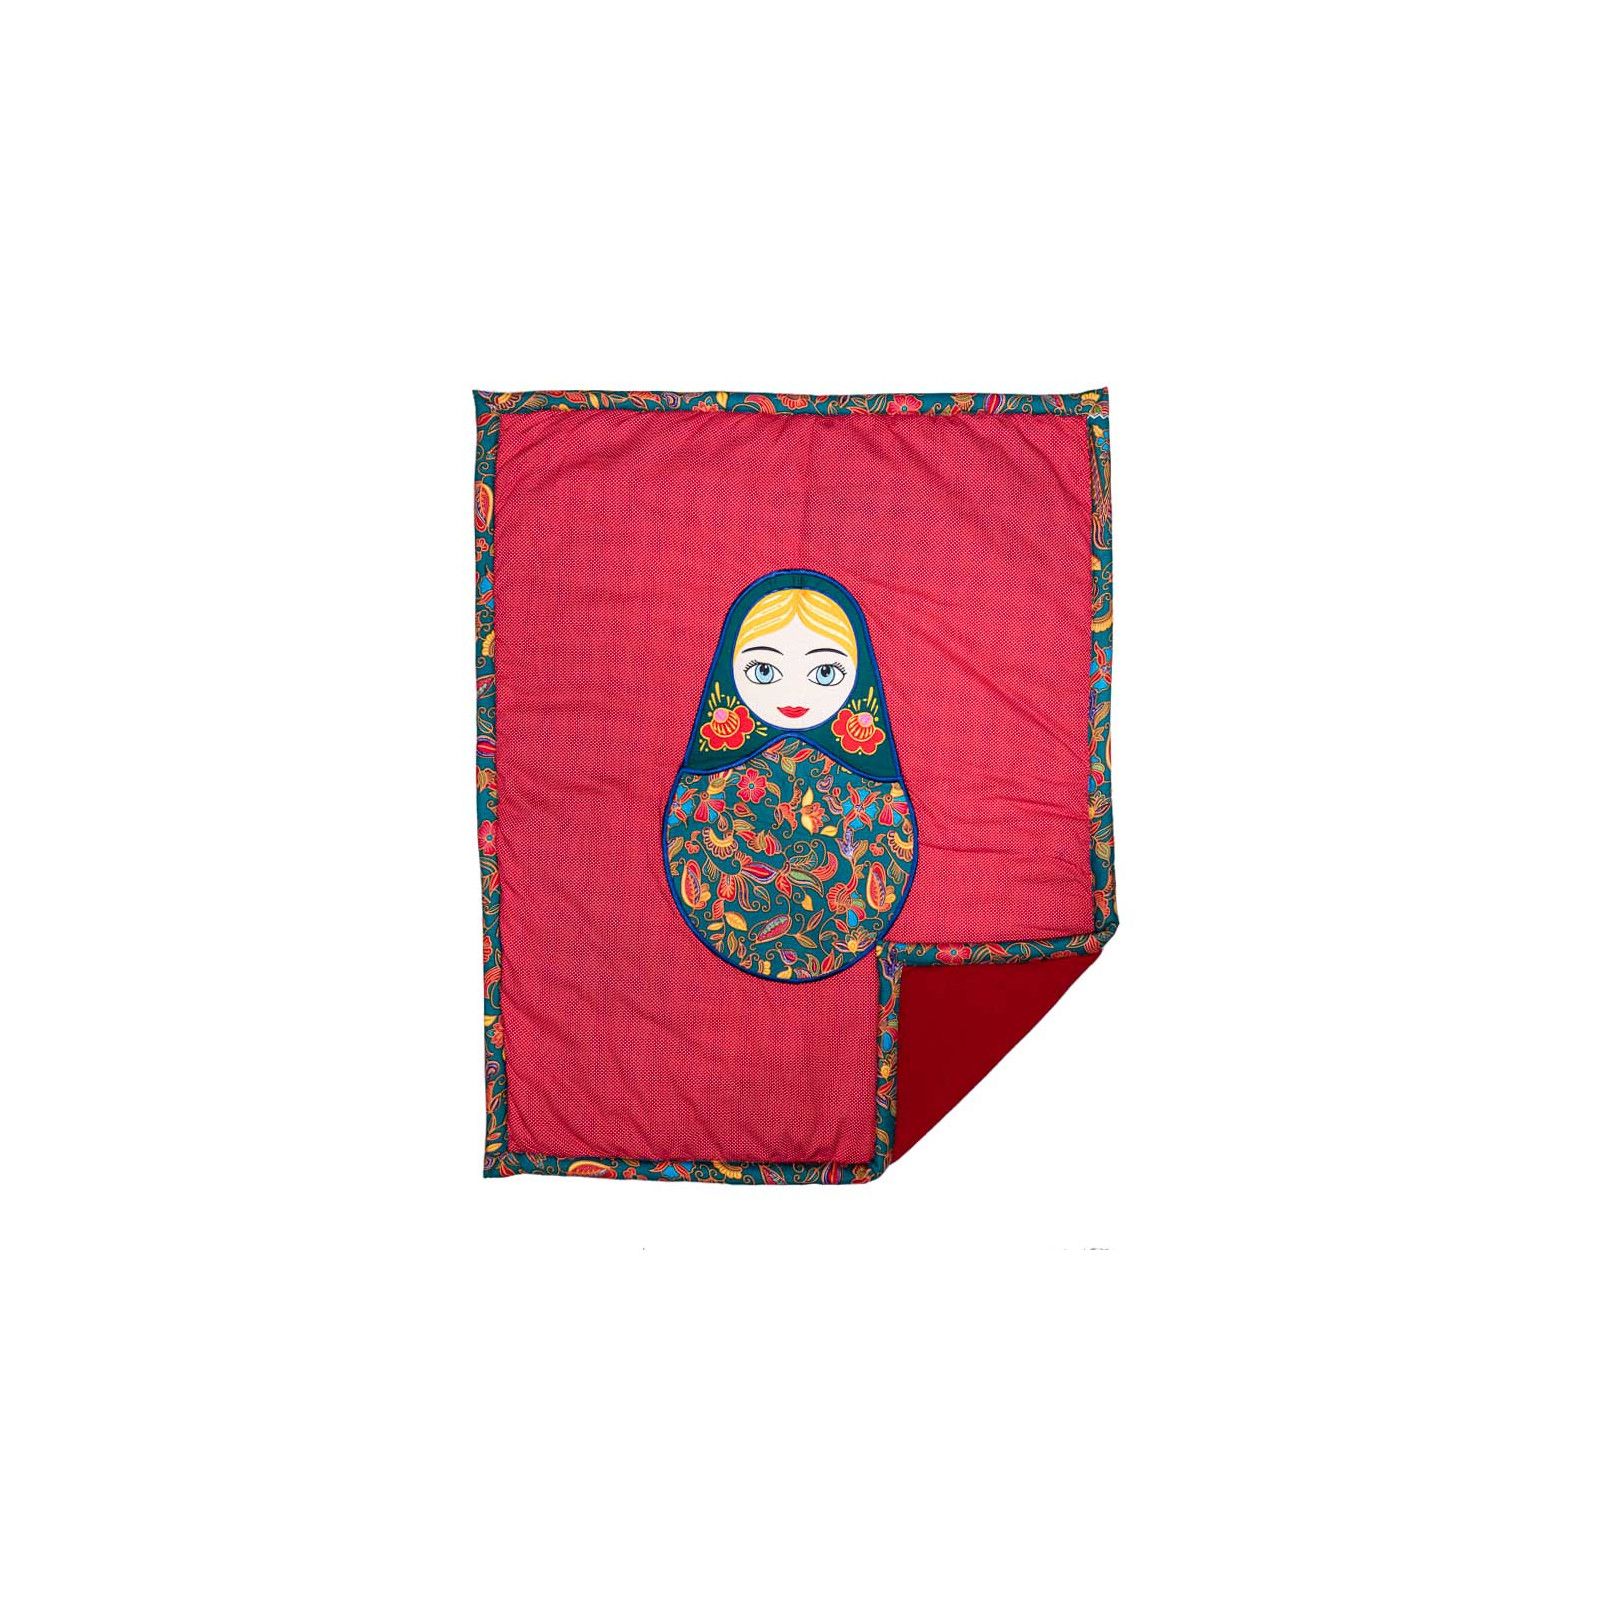 Couverture coton polaire bébé fille rouge avec Matriochka poupée russe brodée